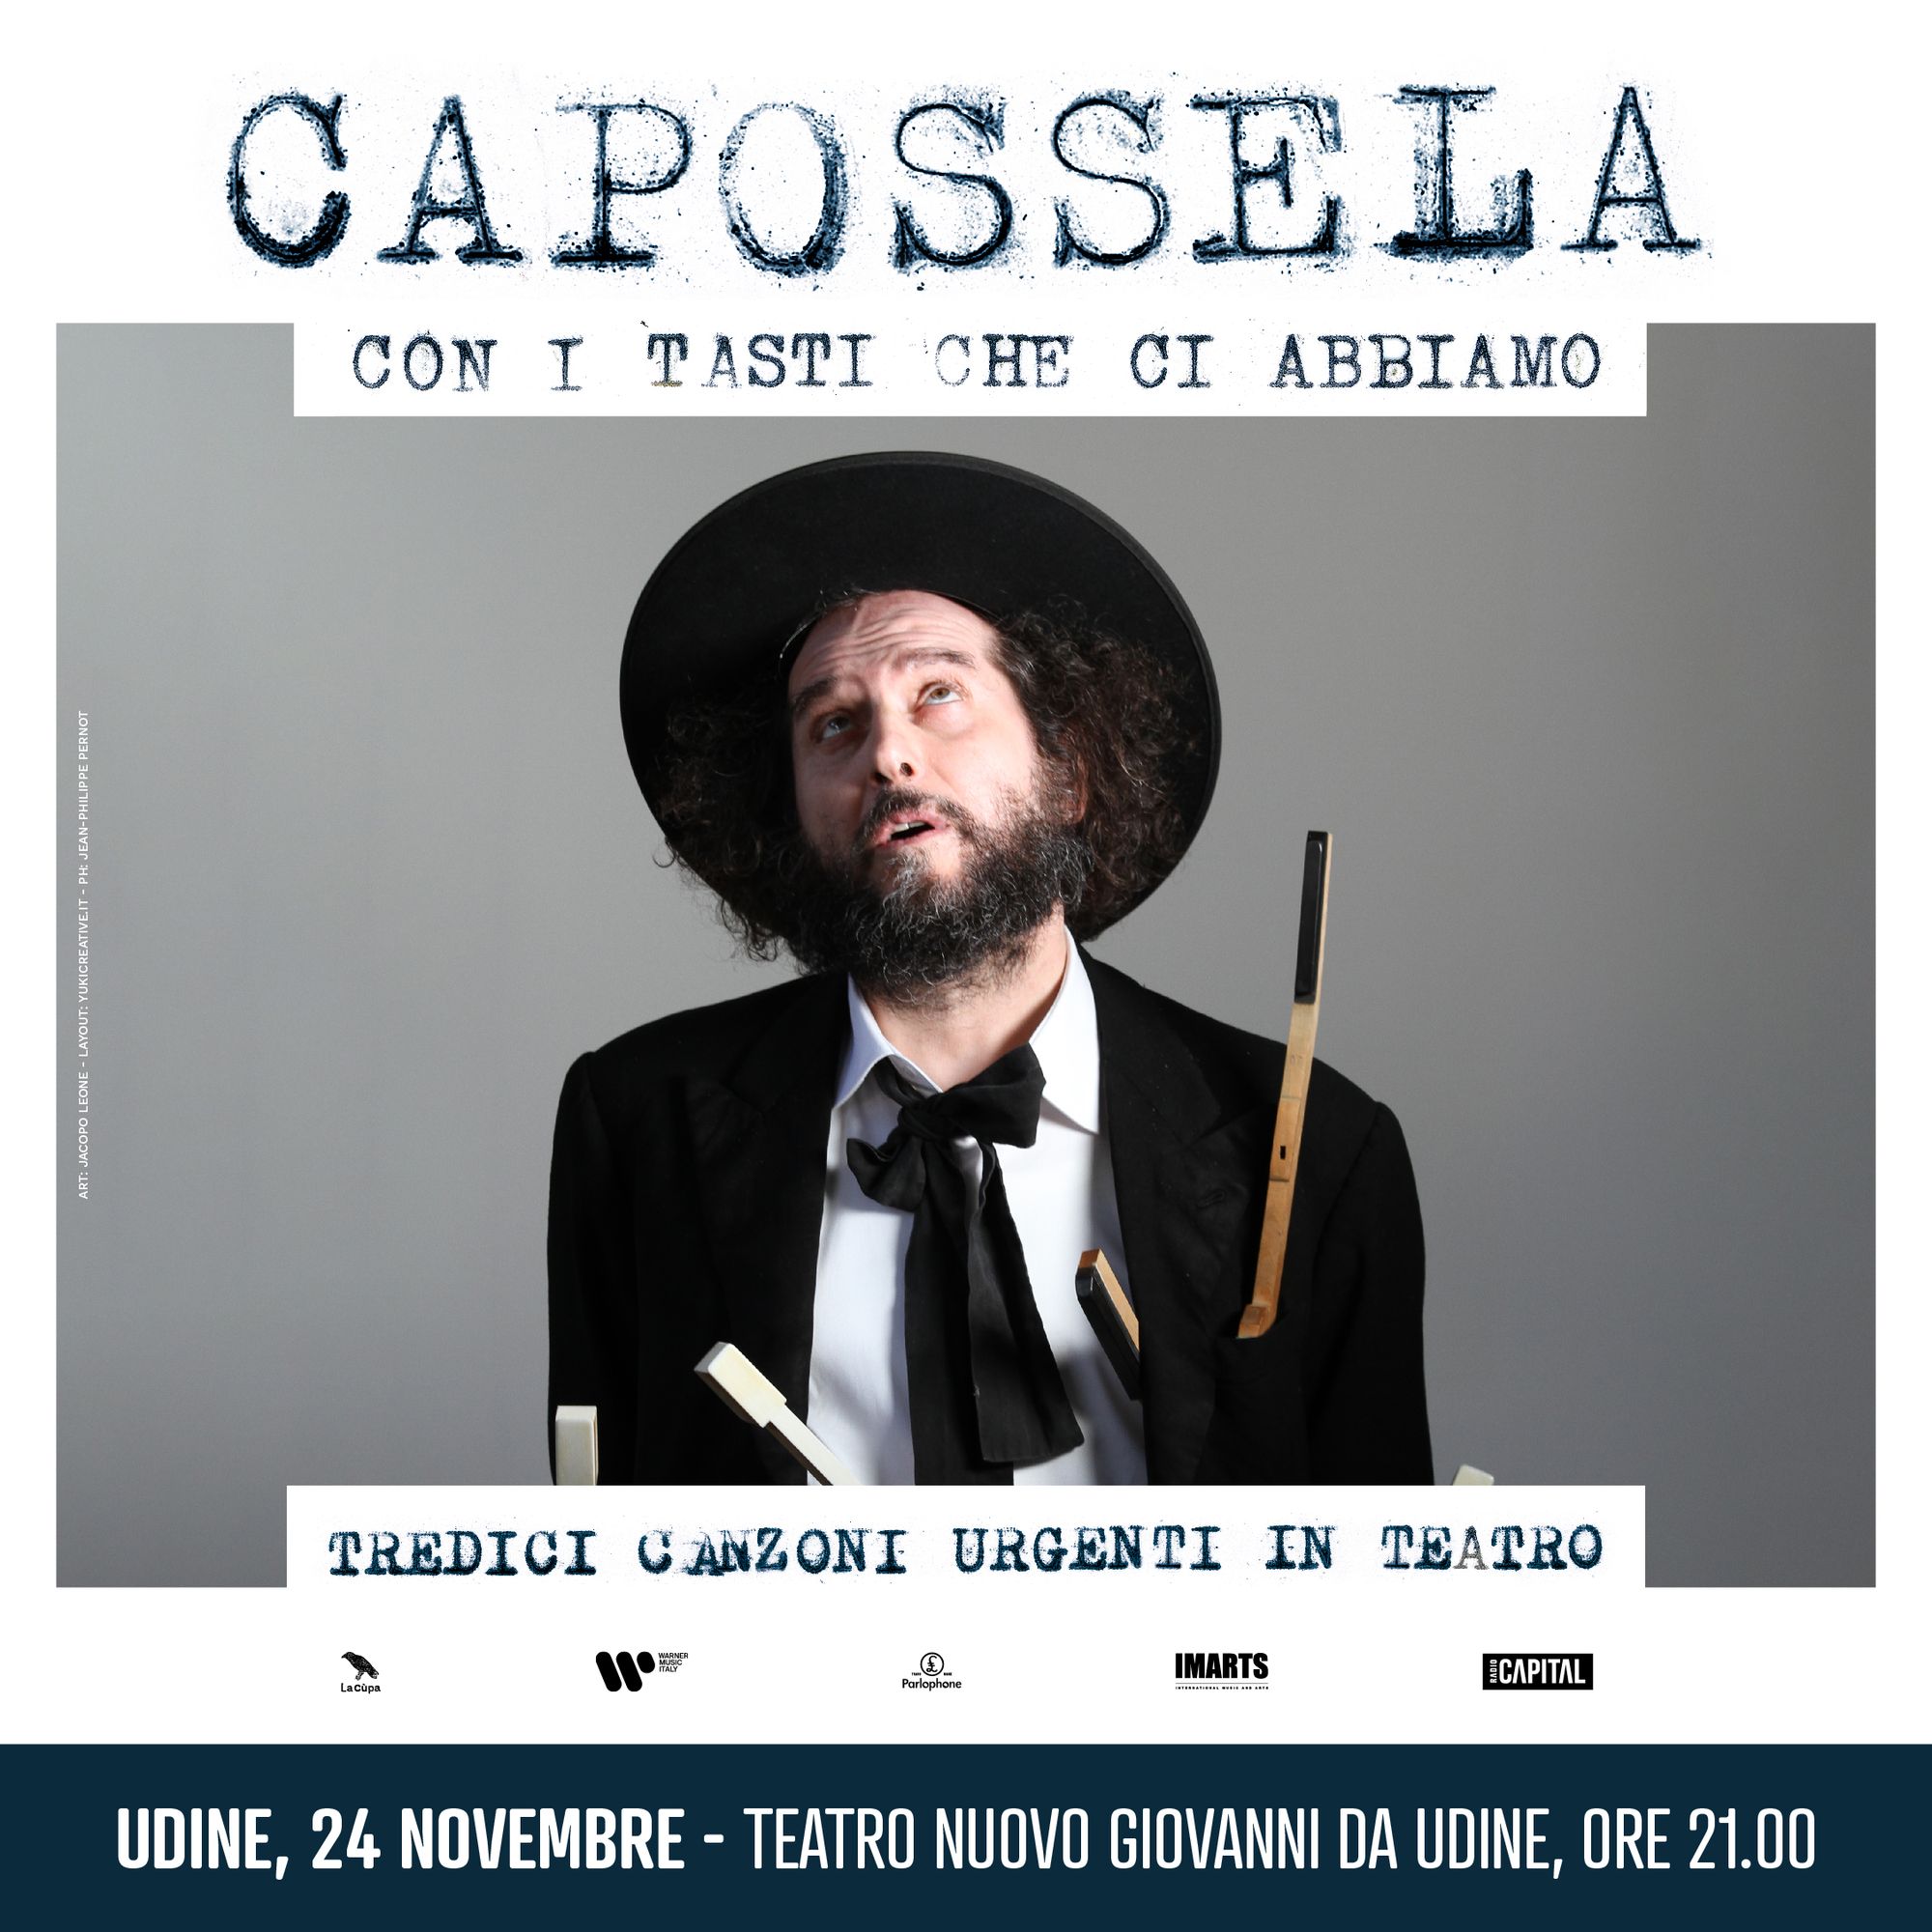 VINICIO CAPOSSELA - Il cantautore Premio Tenco venerdì in concerto al Teatro Nuovo Giovanni da Udine 24 novembre